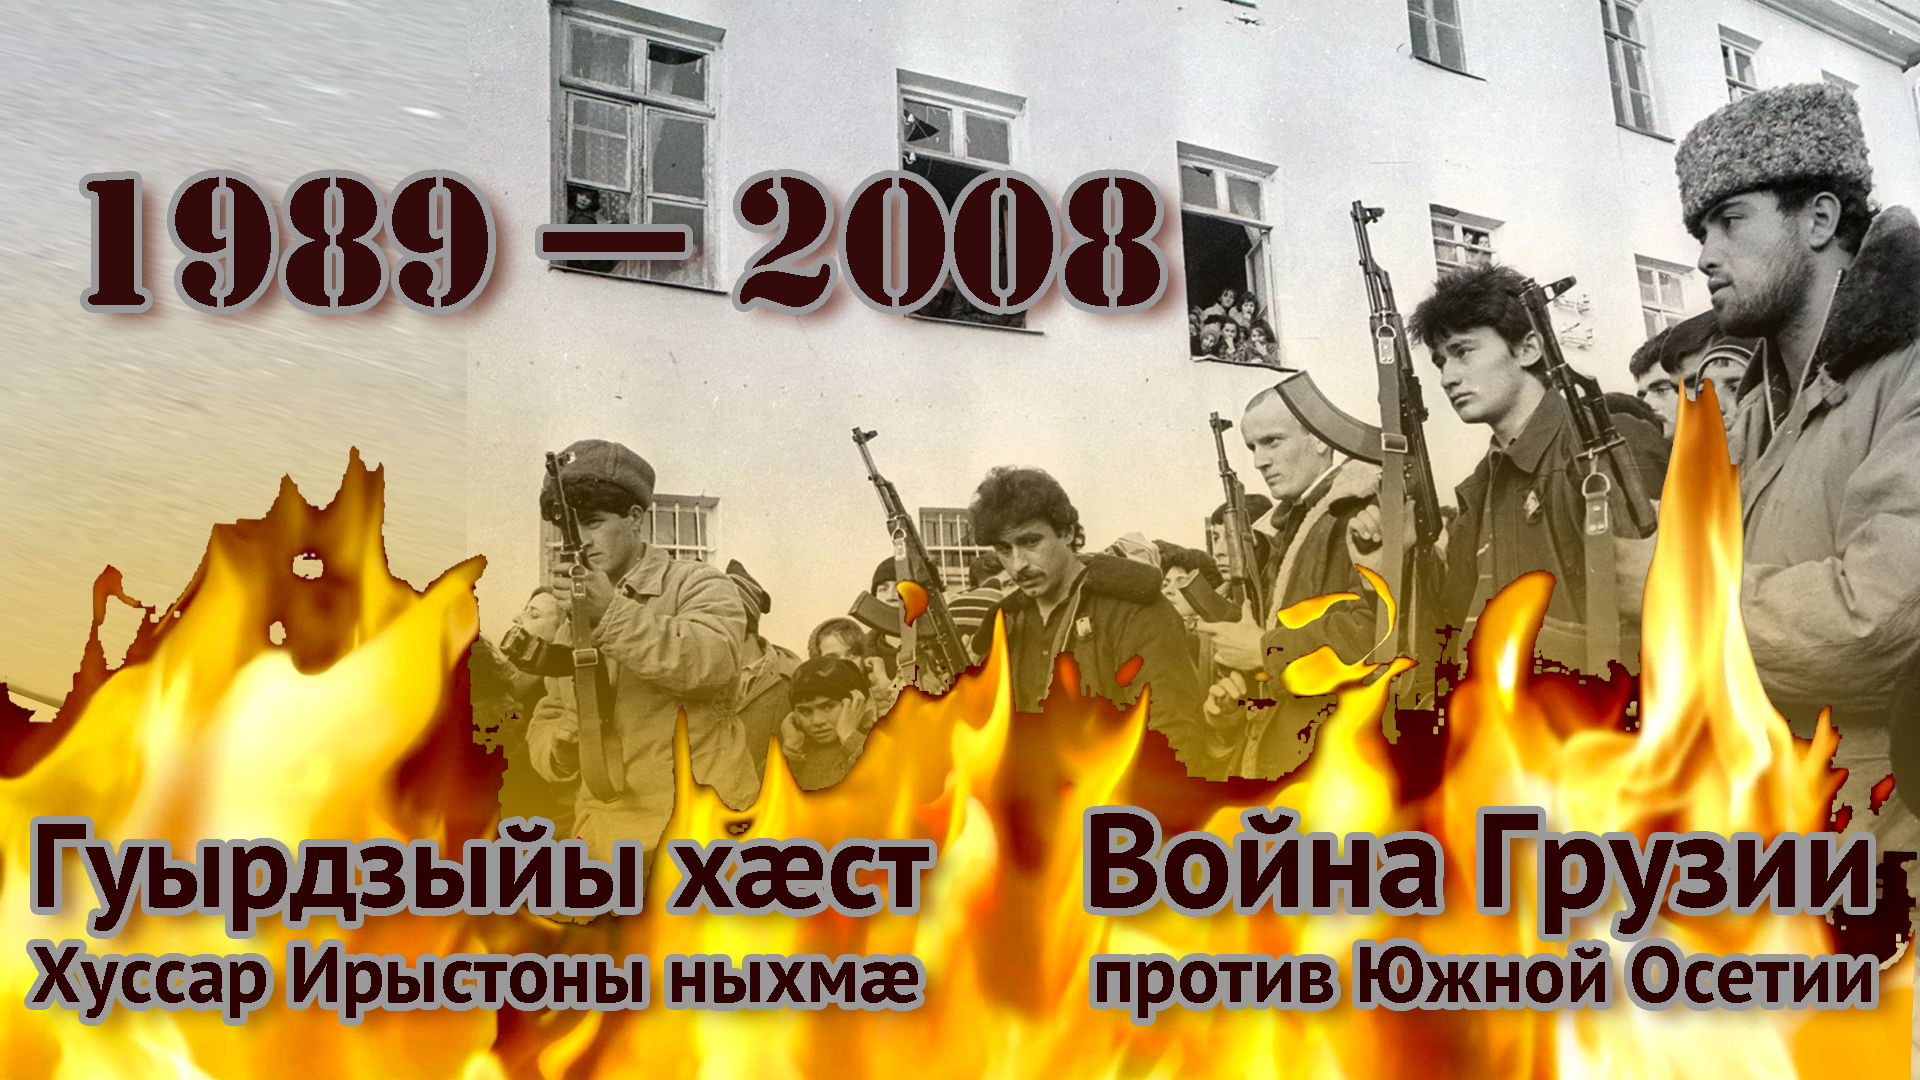 1989-2008. Война Грузии против Южной Осетии